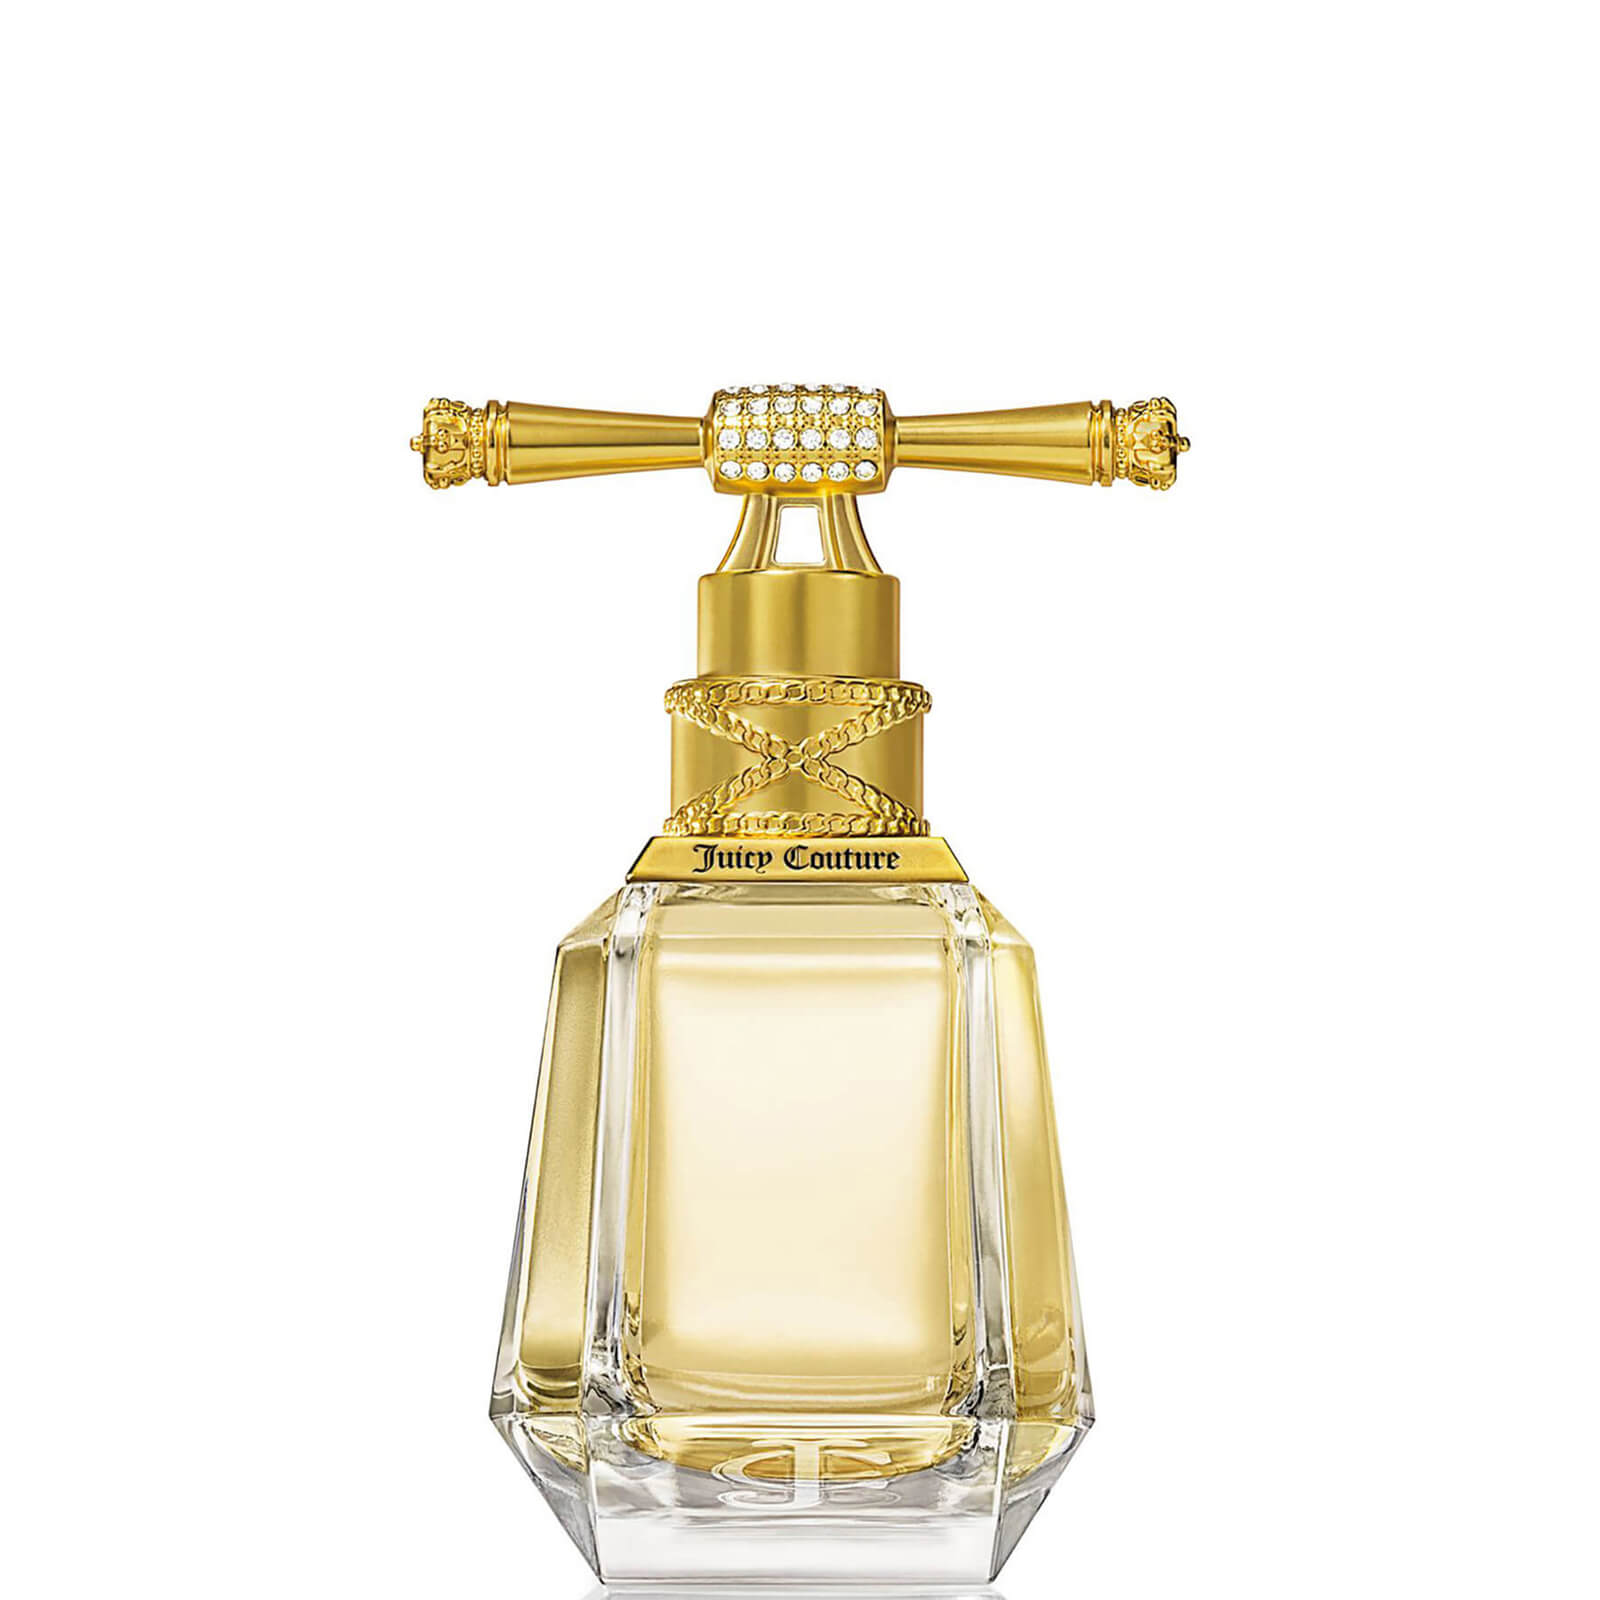 Photos - Women's Fragrance Juicy Couture I am  Eau de Parfum - 50ml A0131195 